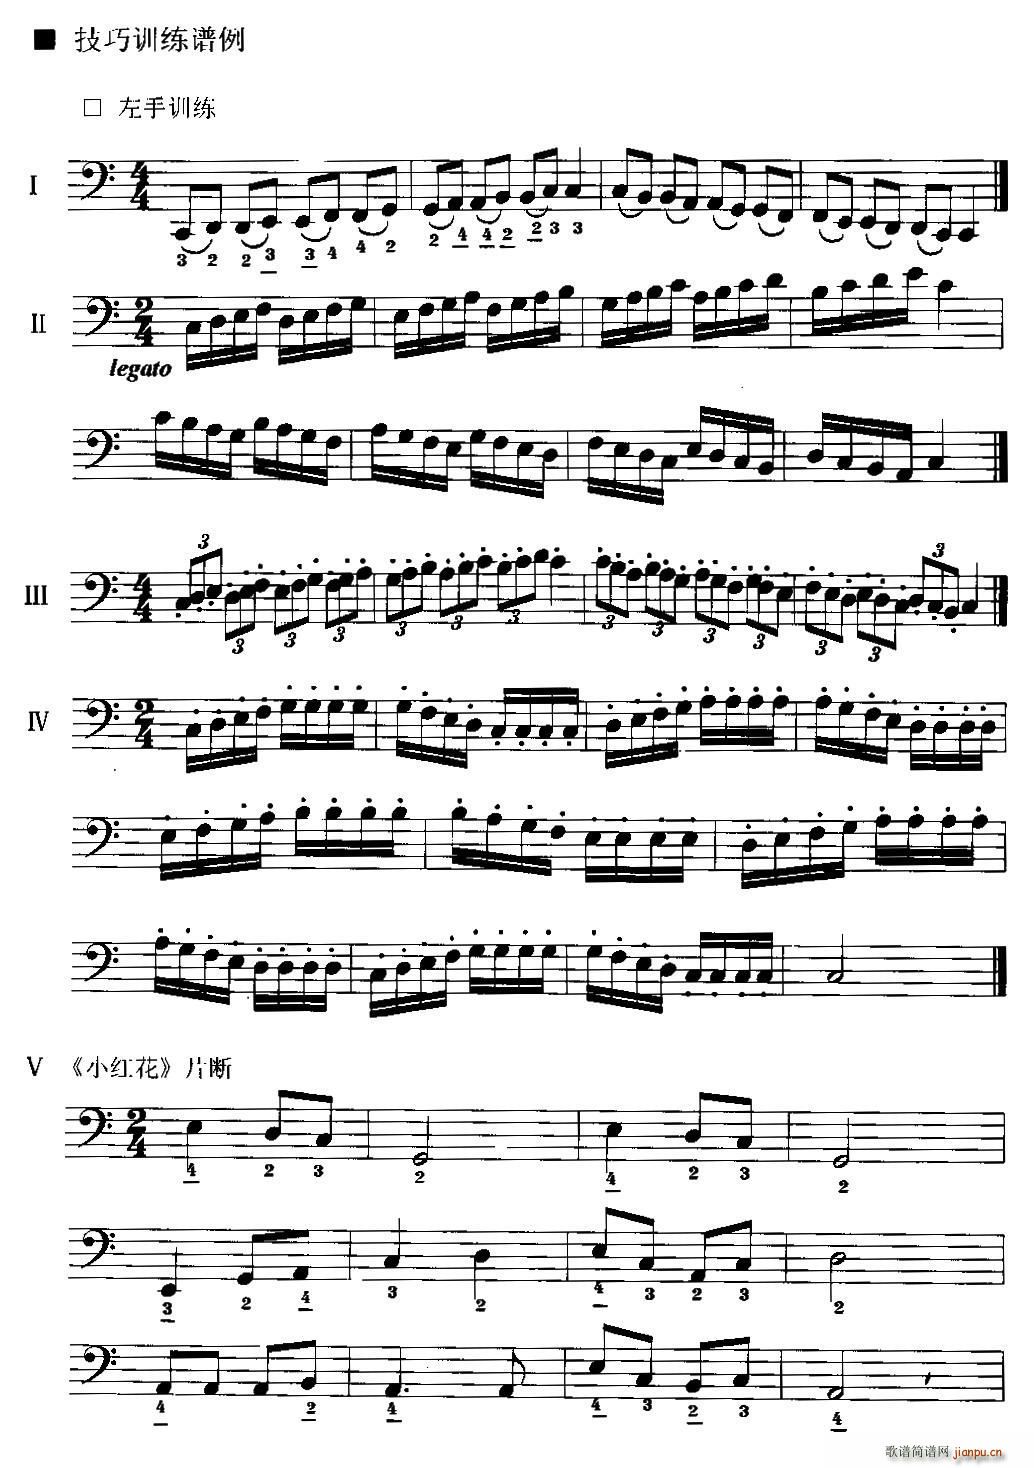 手风琴左手演奏技巧基本练习谱(手风琴谱)1